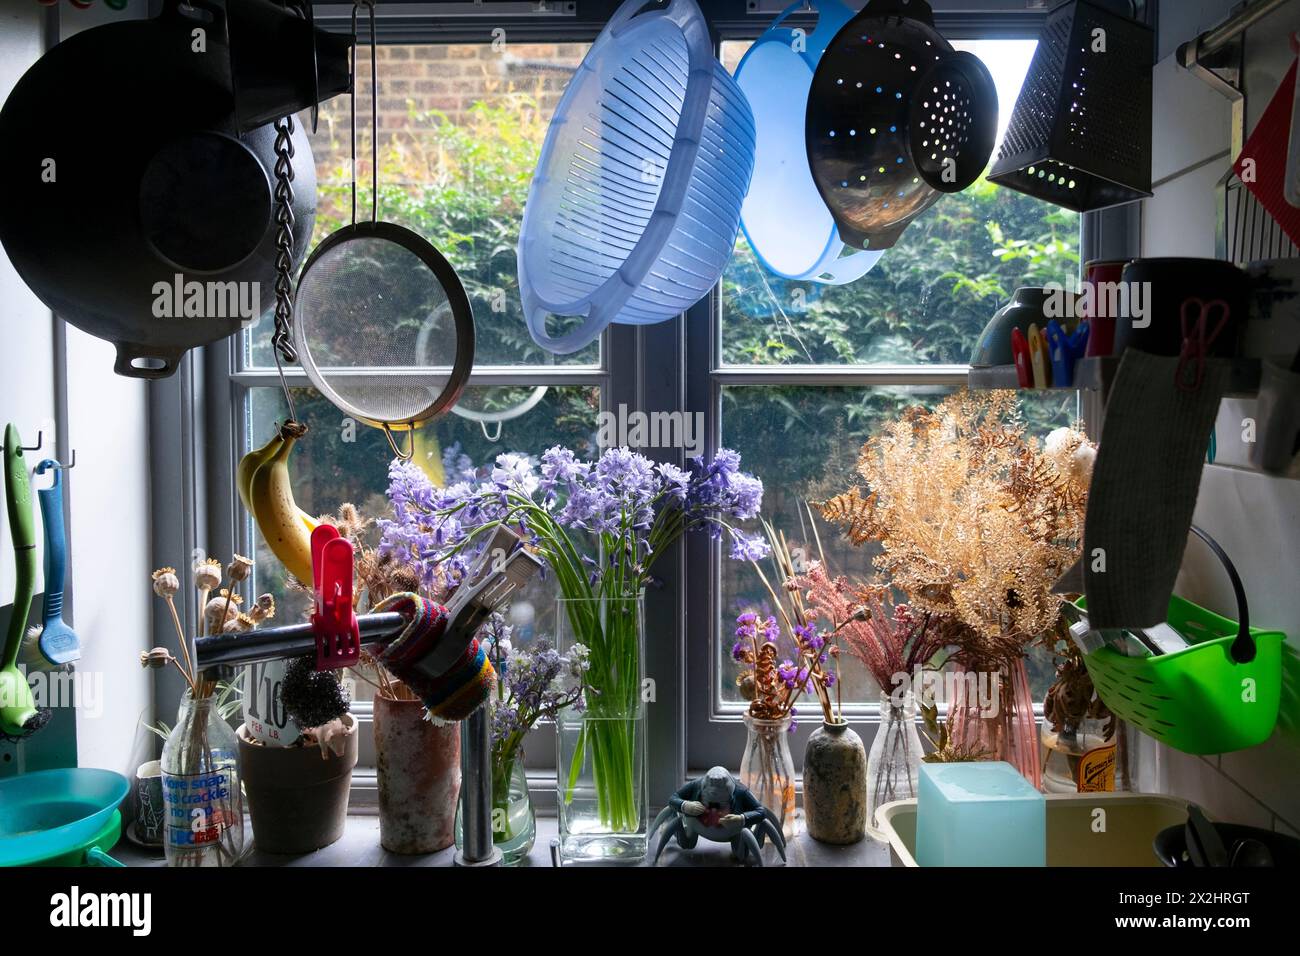 Utensili da cucina appesi sopra il lavandino della cucina con vista dall'interno della finestra all'interno della casa a schiera a Londra Inghilterra Regno Unito KATHY DEWITT Foto Stock